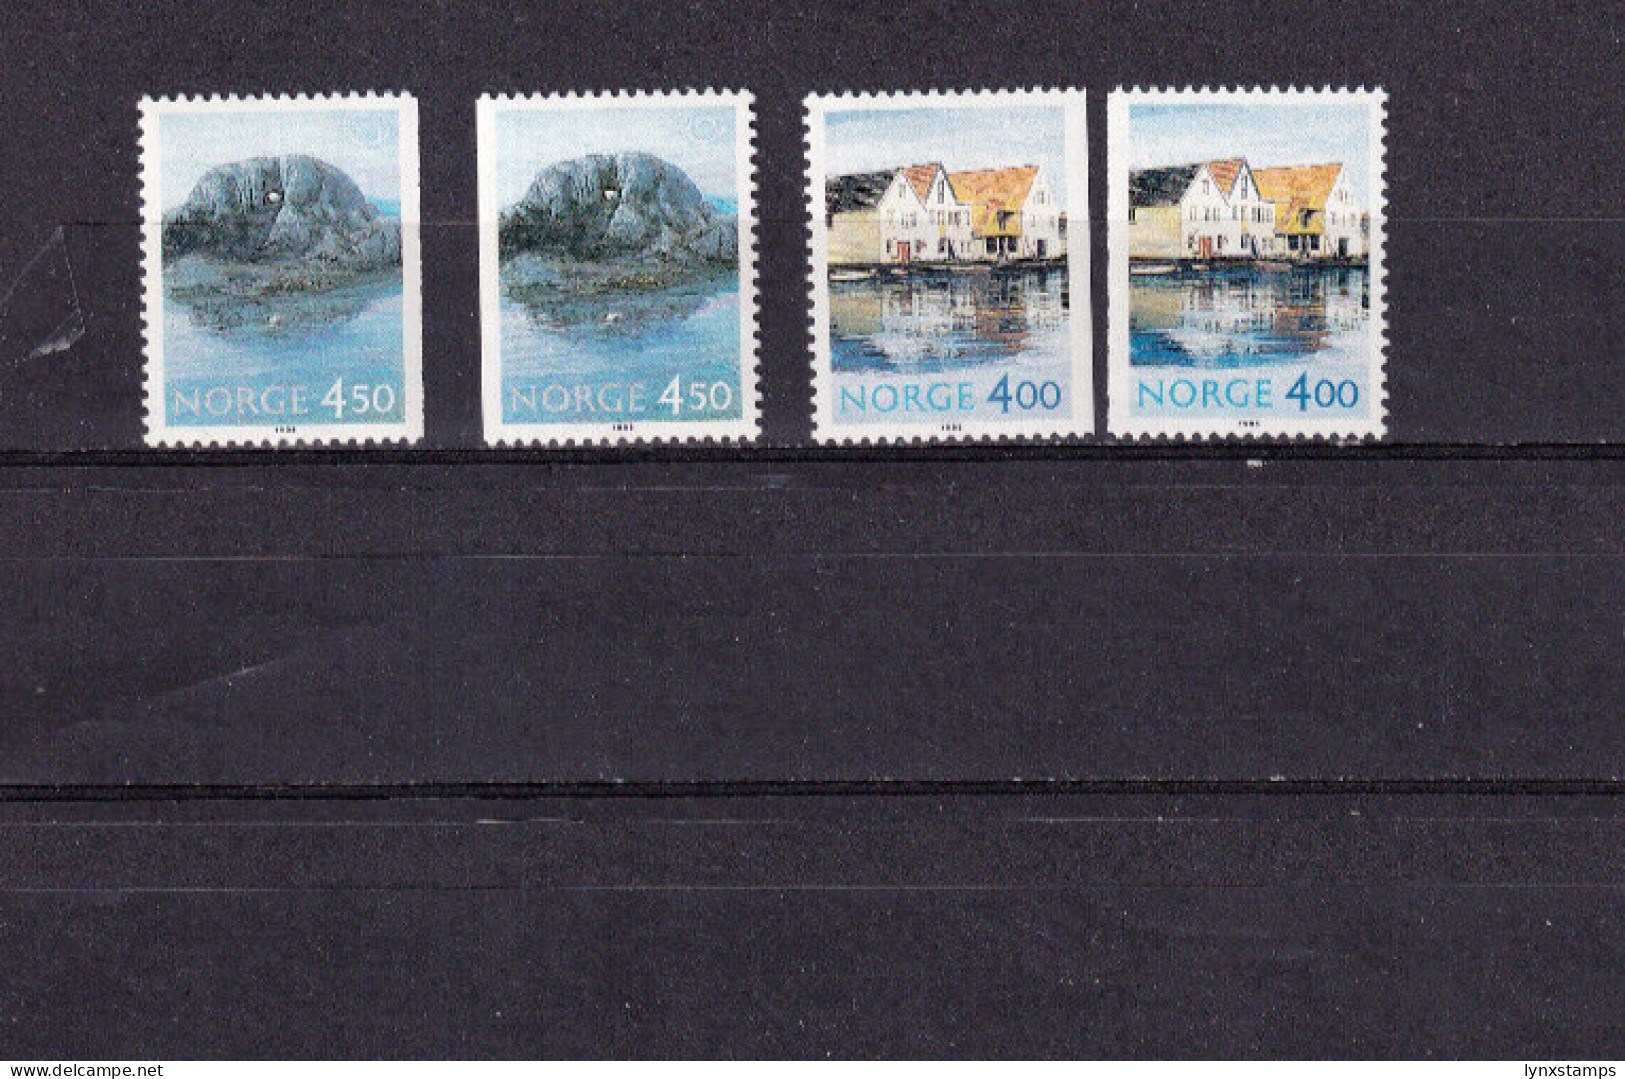 LI04 Norway 1995 Northern Edition - Tourism Mint Stamps - Ongebruikt